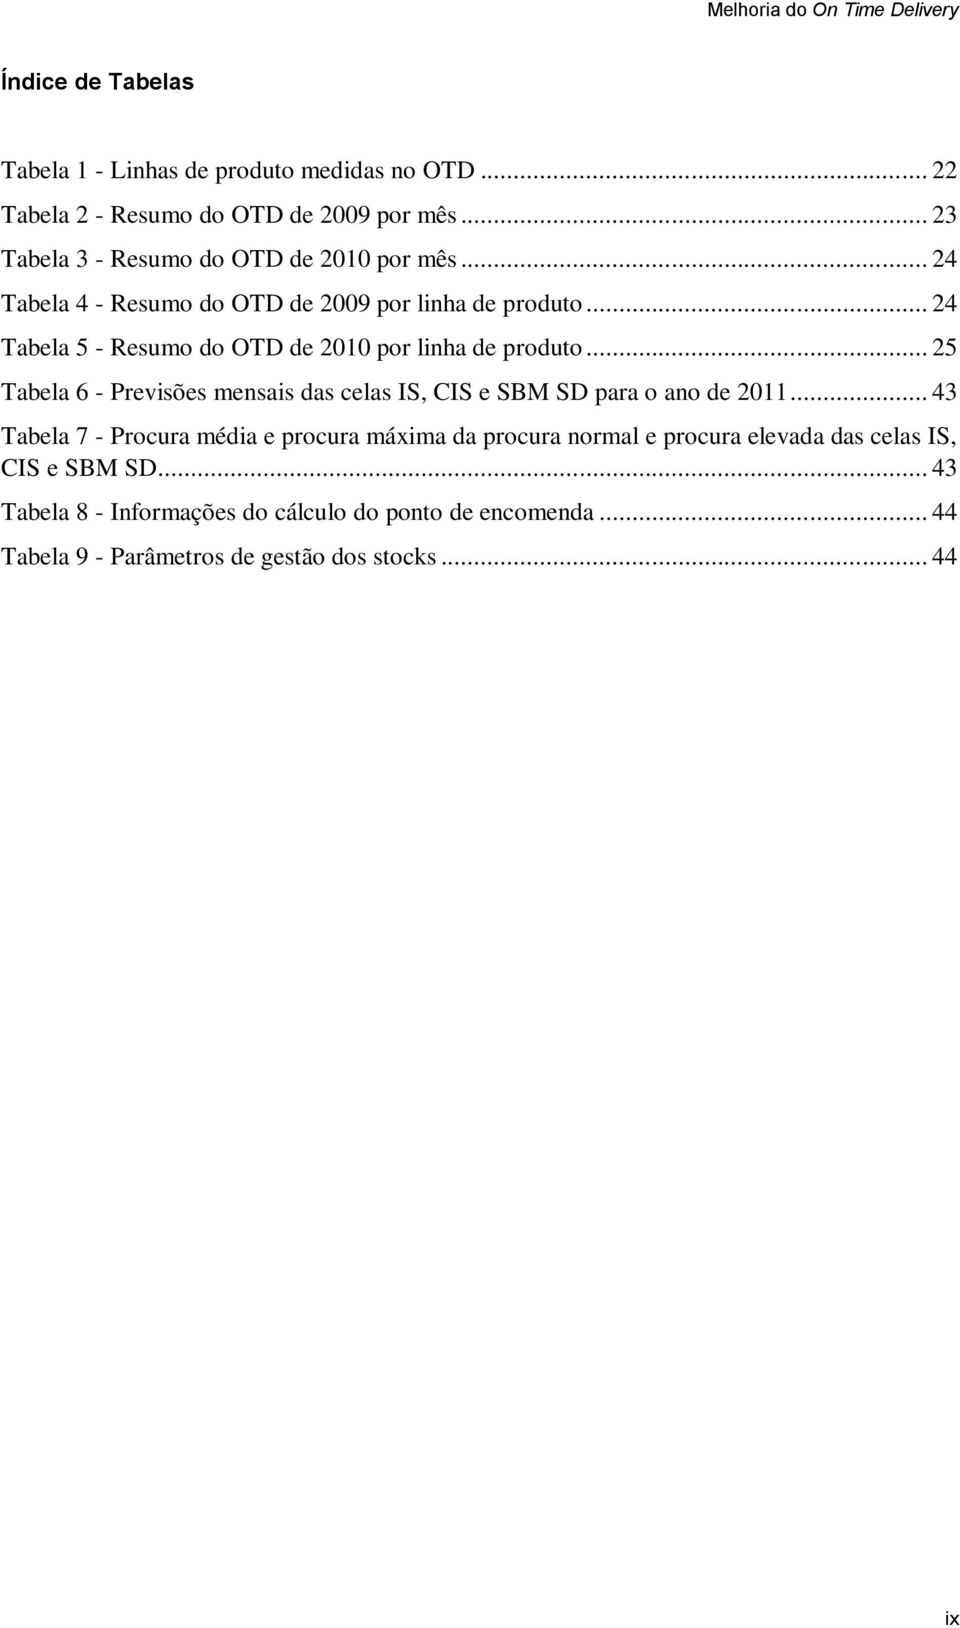 .. 24 Tabela 5 - Resumo do OTD de 2010 por linha de produto... 25 Tabela 6 - Previsões mensais das celas IS, CIS e SBM SD para o ano de 2011.